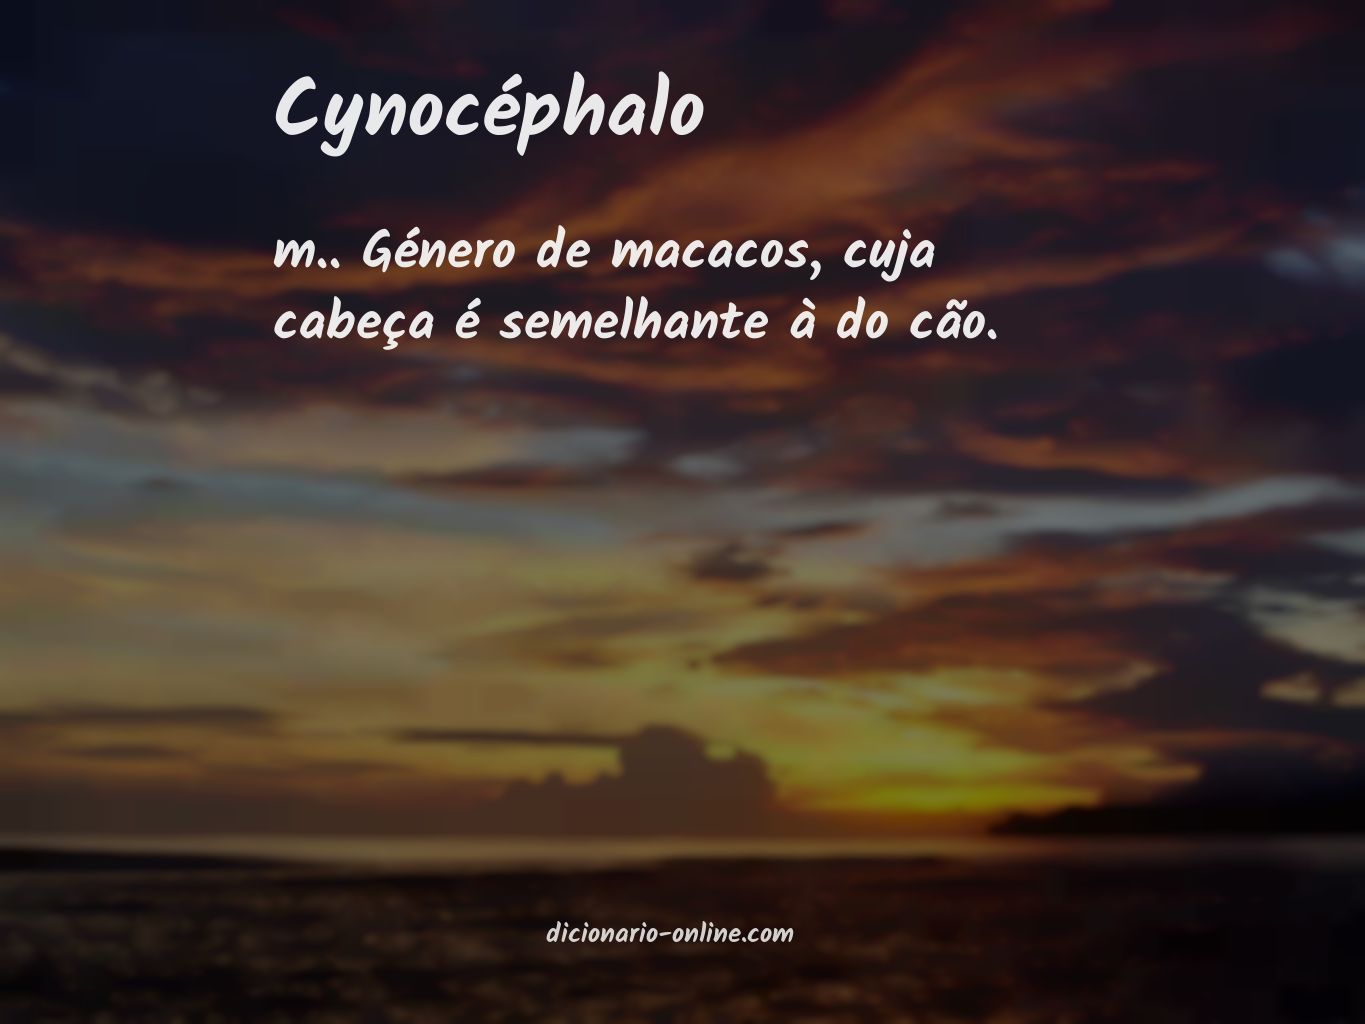 Significado de cynocéphalo